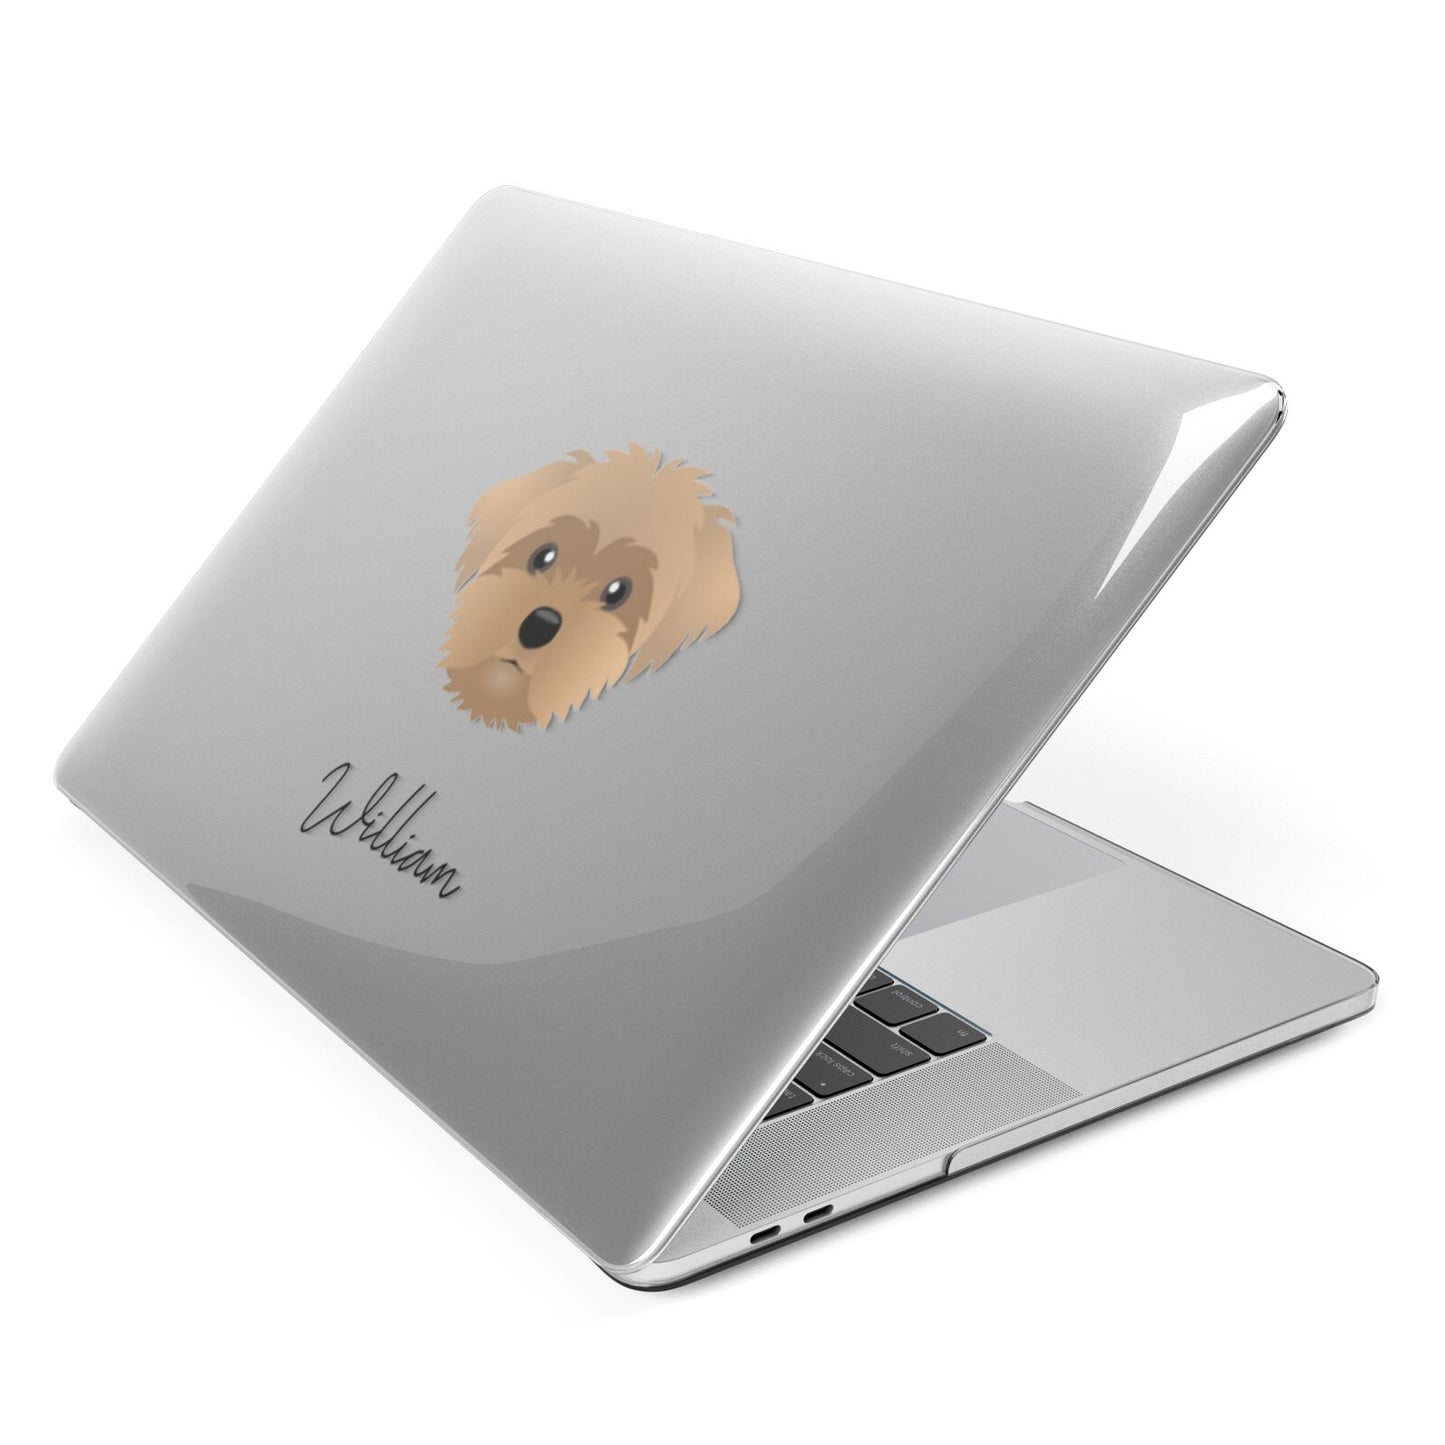 Peek a poo Personalised Apple MacBook Case Side View